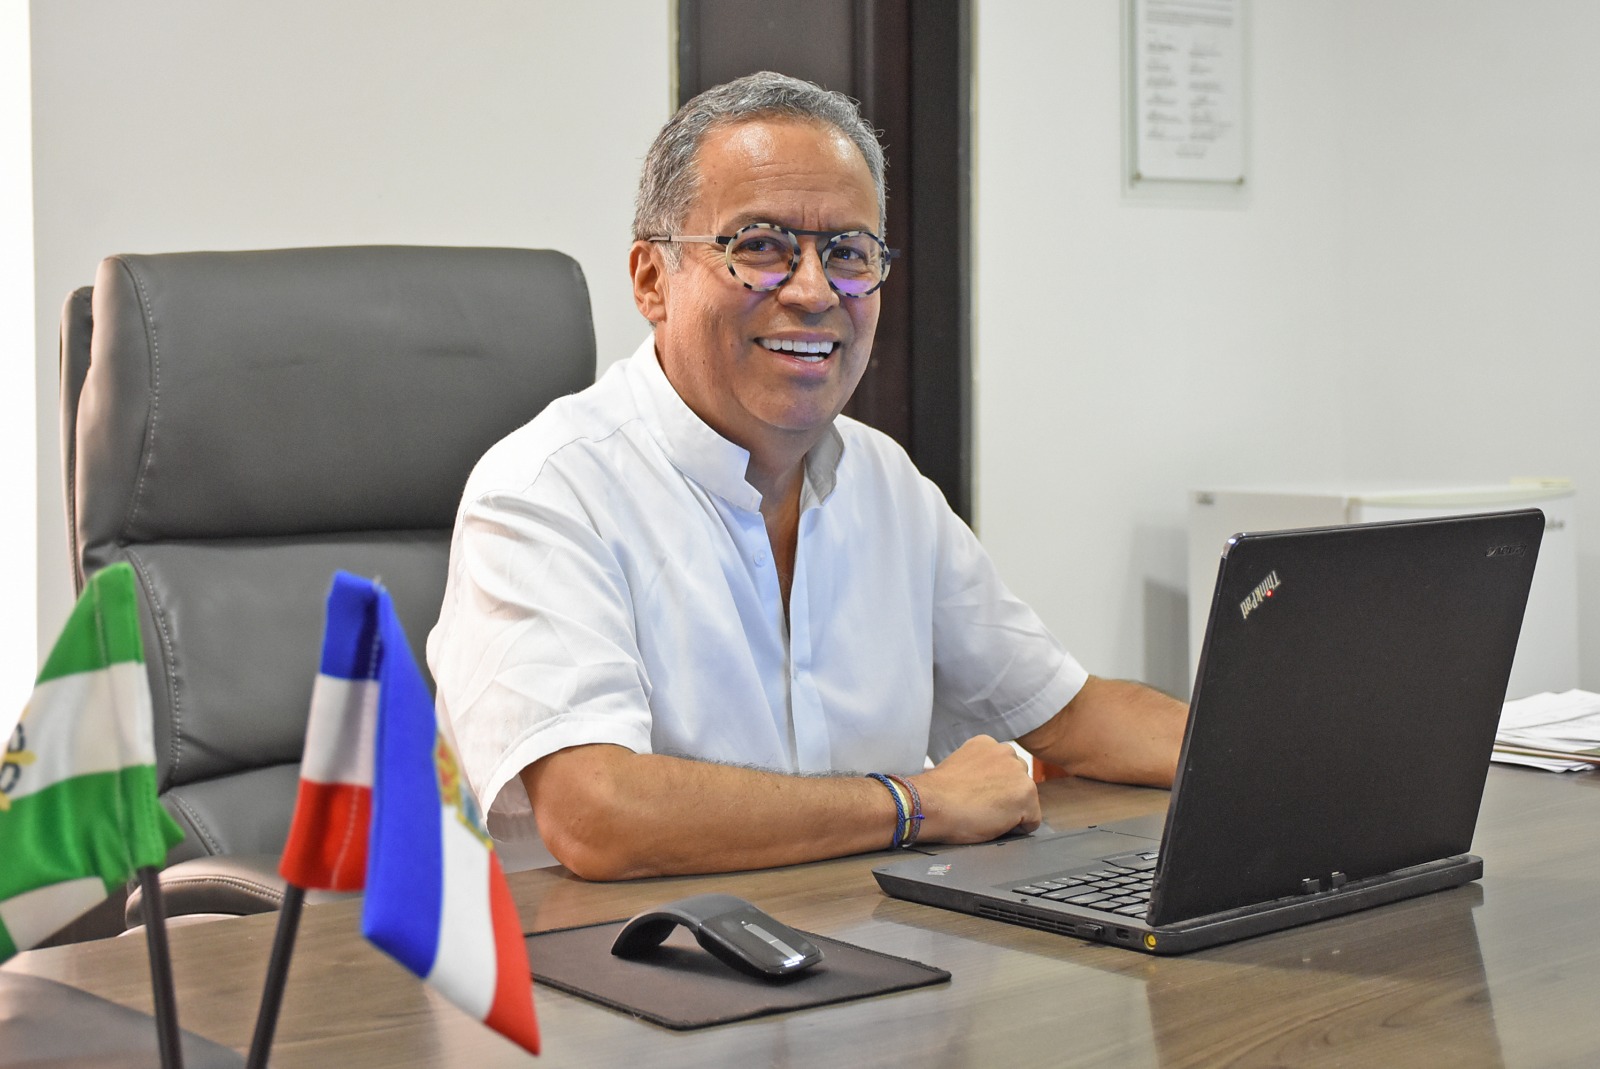 “Hay que salvar la empresa para todos”: Germán González gerente interventor de Emdupar